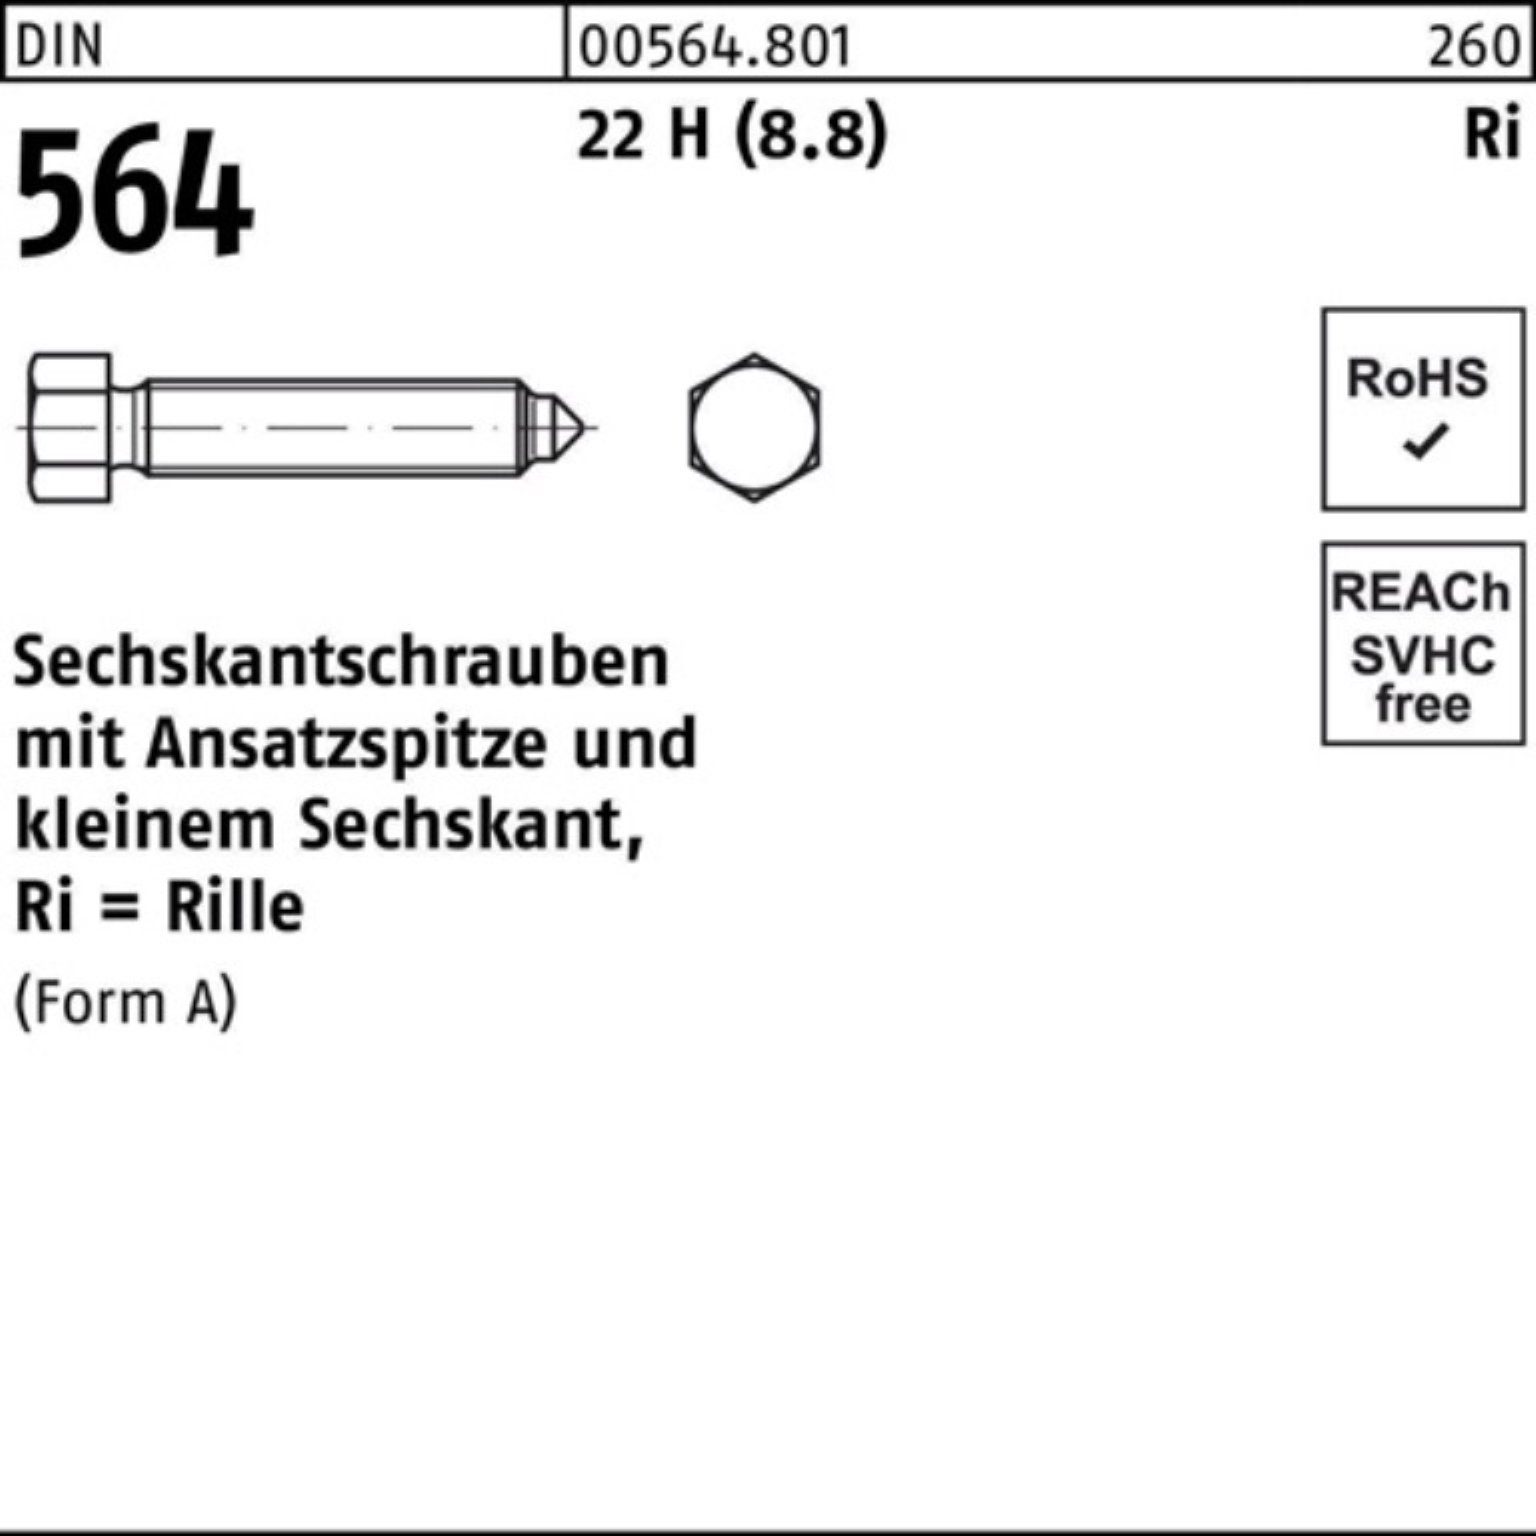 Reyher Sechskantschraube 100er Pack Sechskantschraube DIN 564 Ansatzspitze AM 12x 50 22 H (8.8)